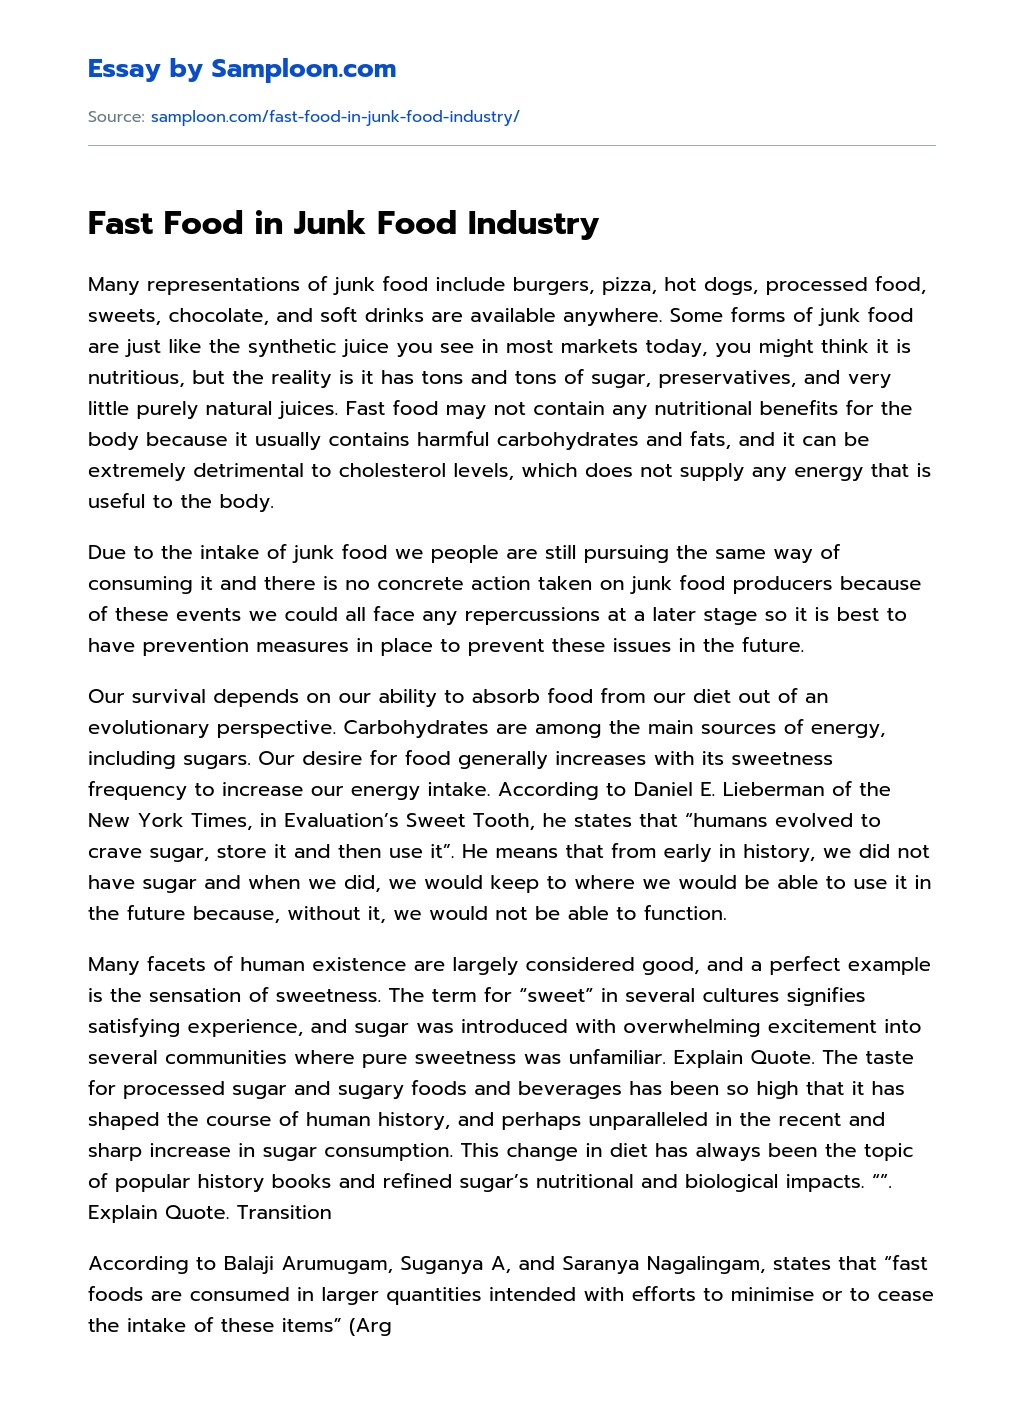 Fast Food in Junk Food Industry Free Essay Sample on Samploon.com